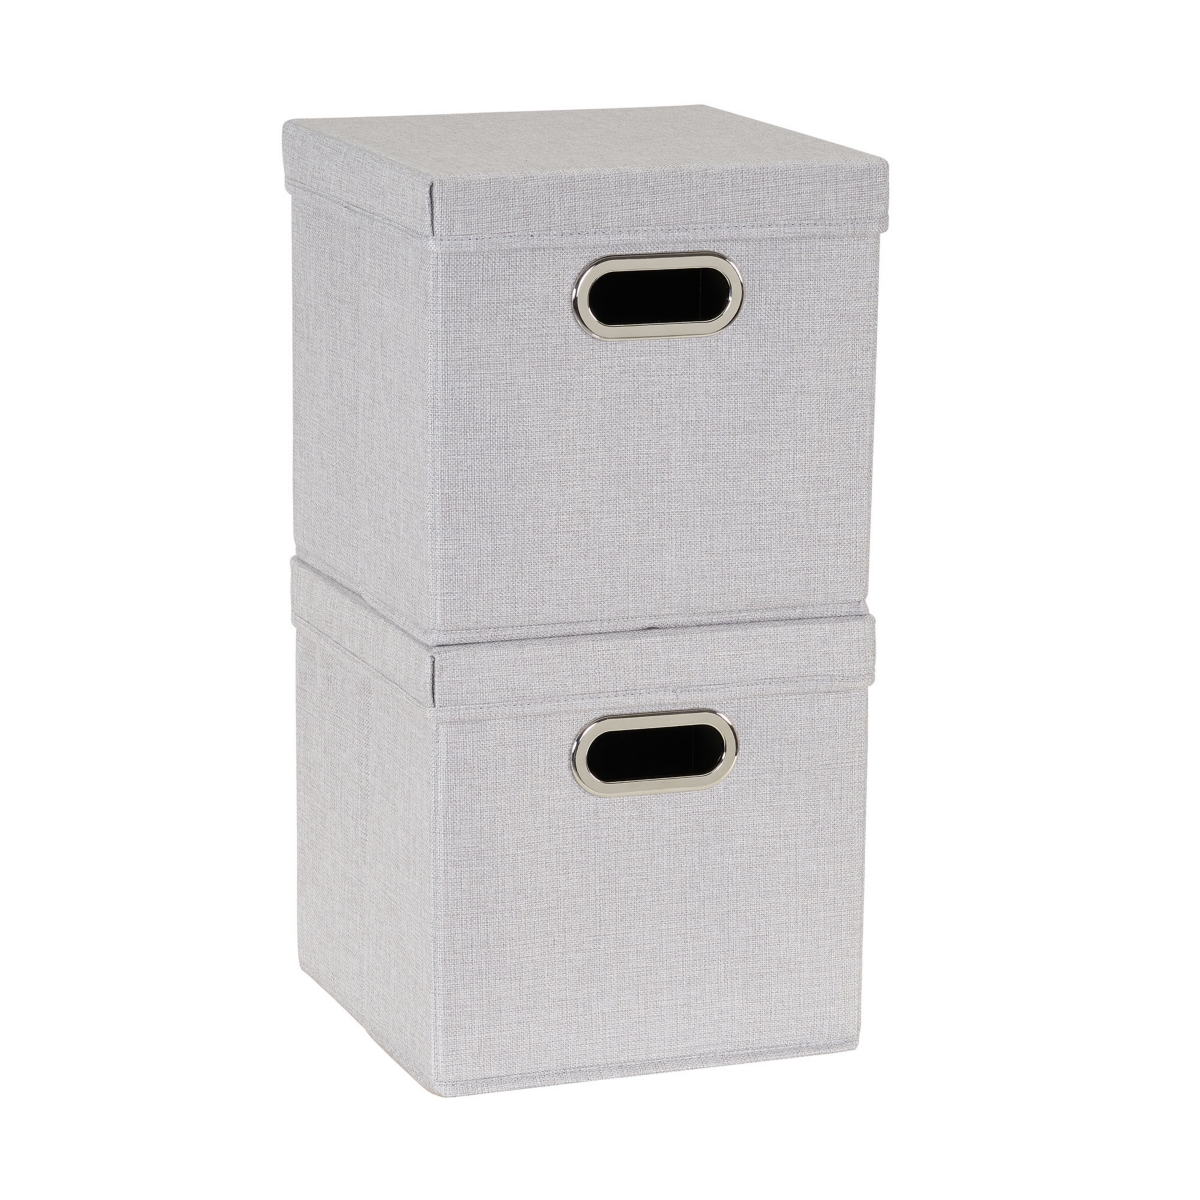 2-Pc. Silver Storage Box Set - Silver